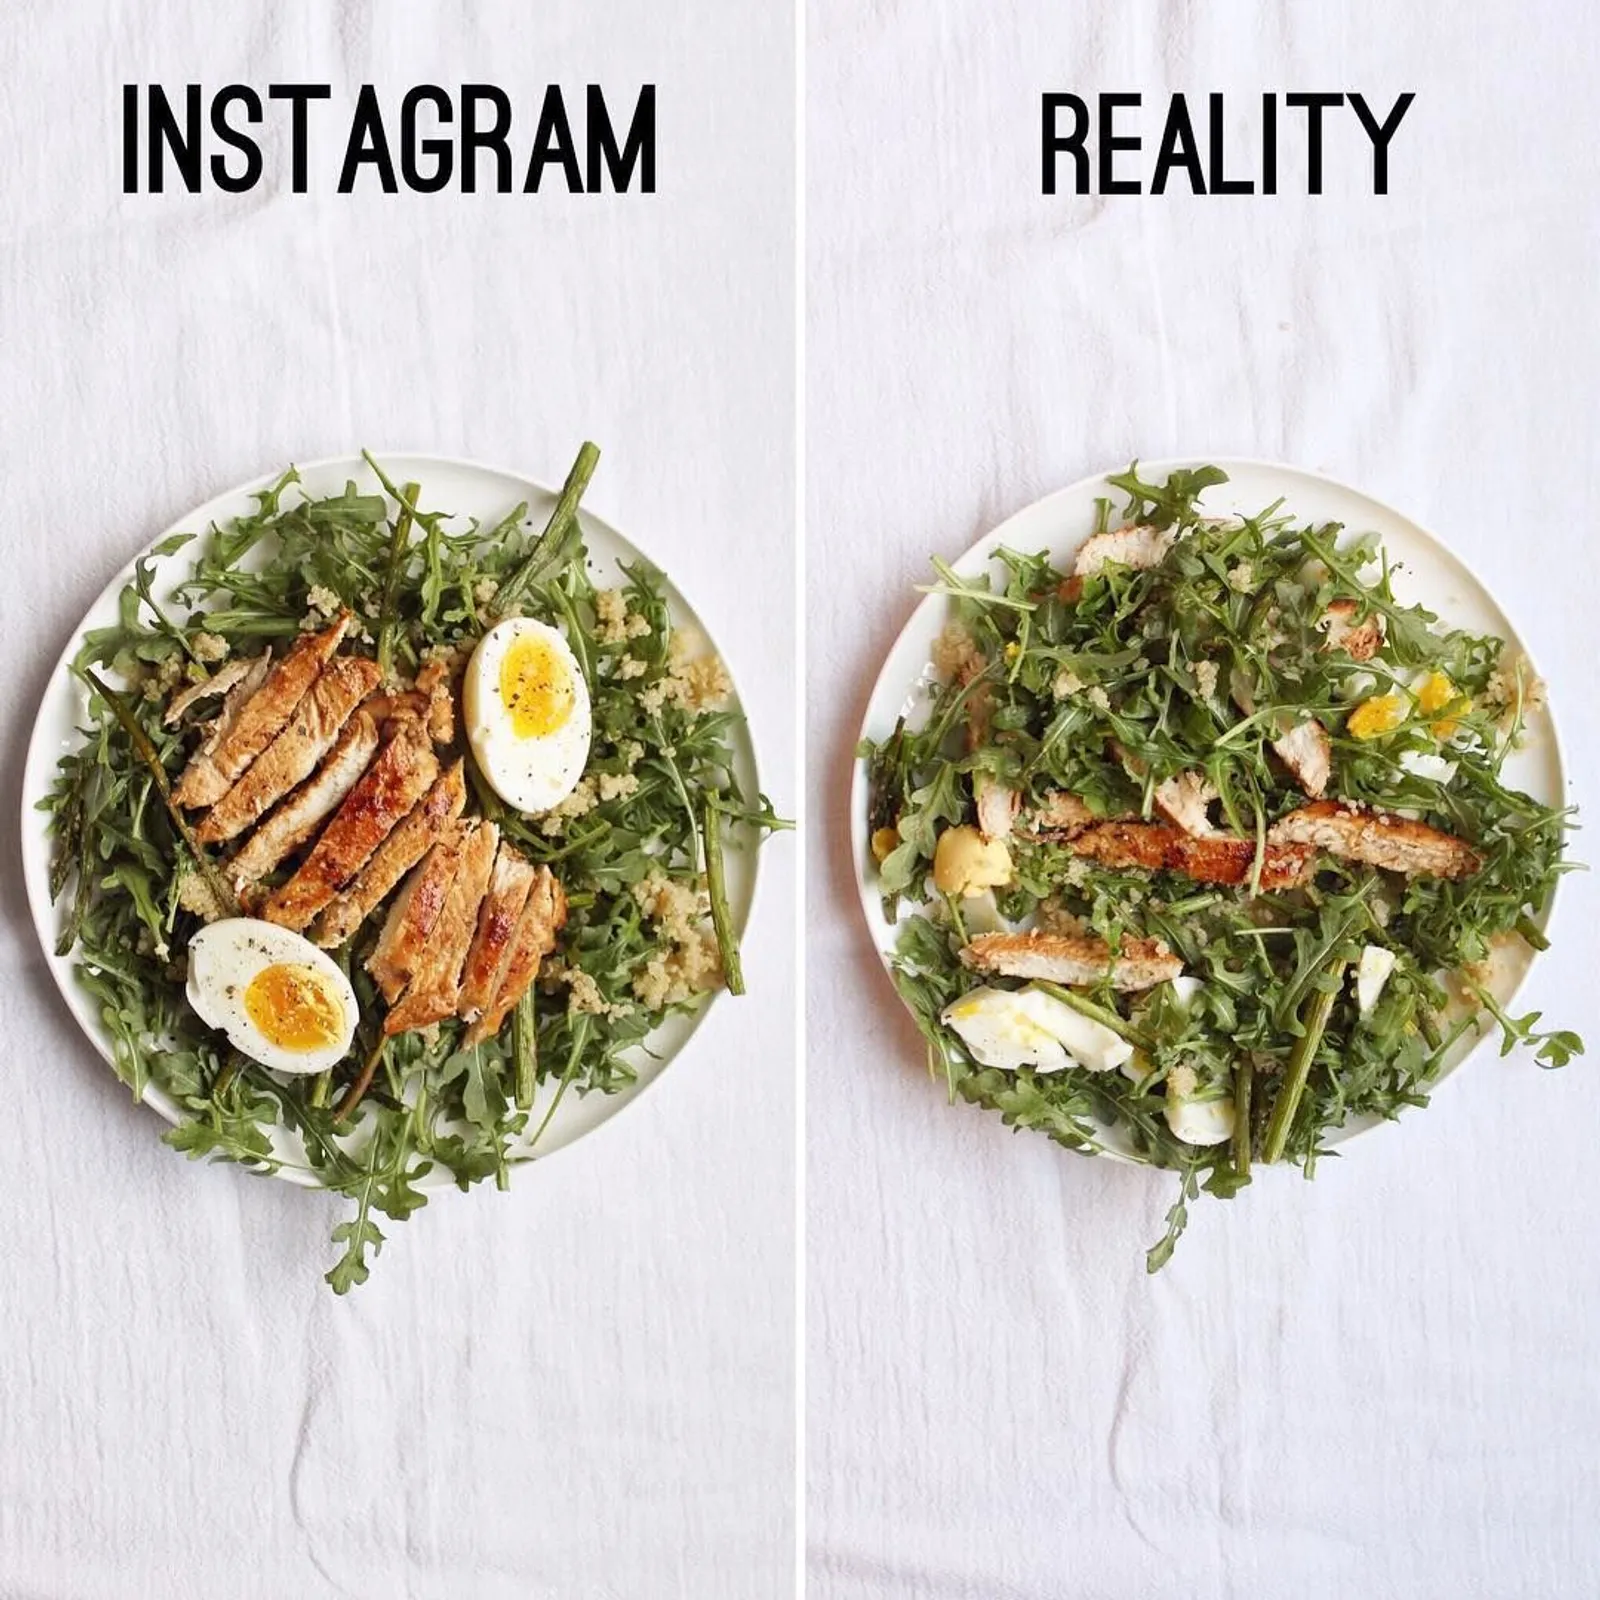 Nggak Semenarik di Instagram, Ini Tampilan Asli Makanan Organik